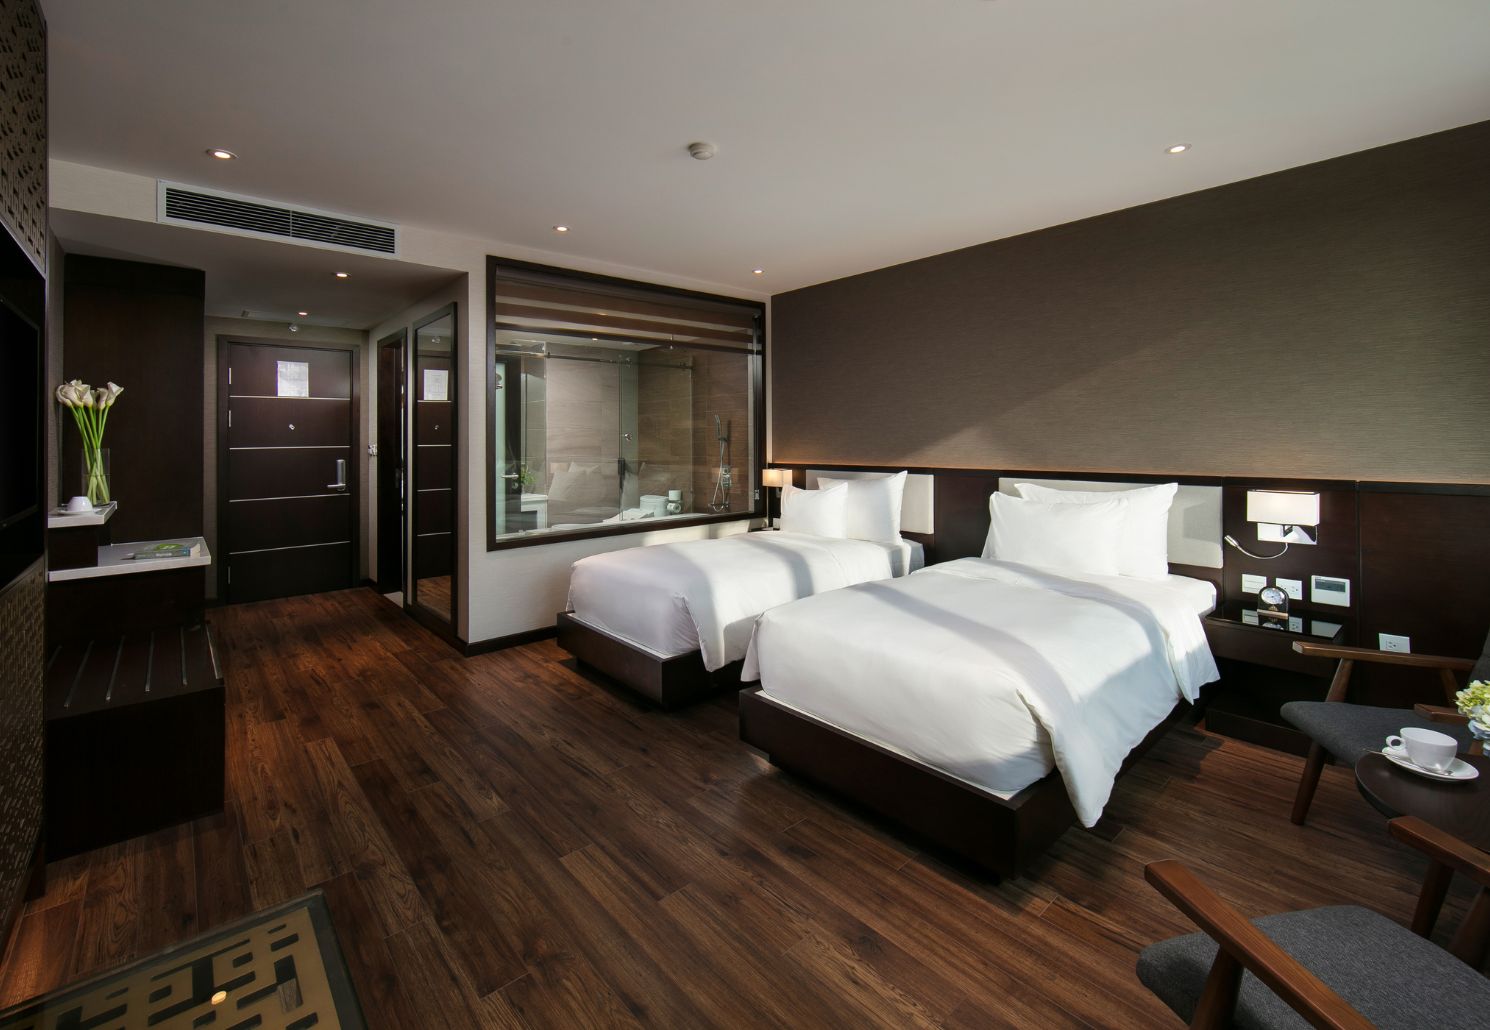 Khám phá Grandiose Hotel and Spa, điểm lưu trú hiện đại trong lòng Hà Nội 6